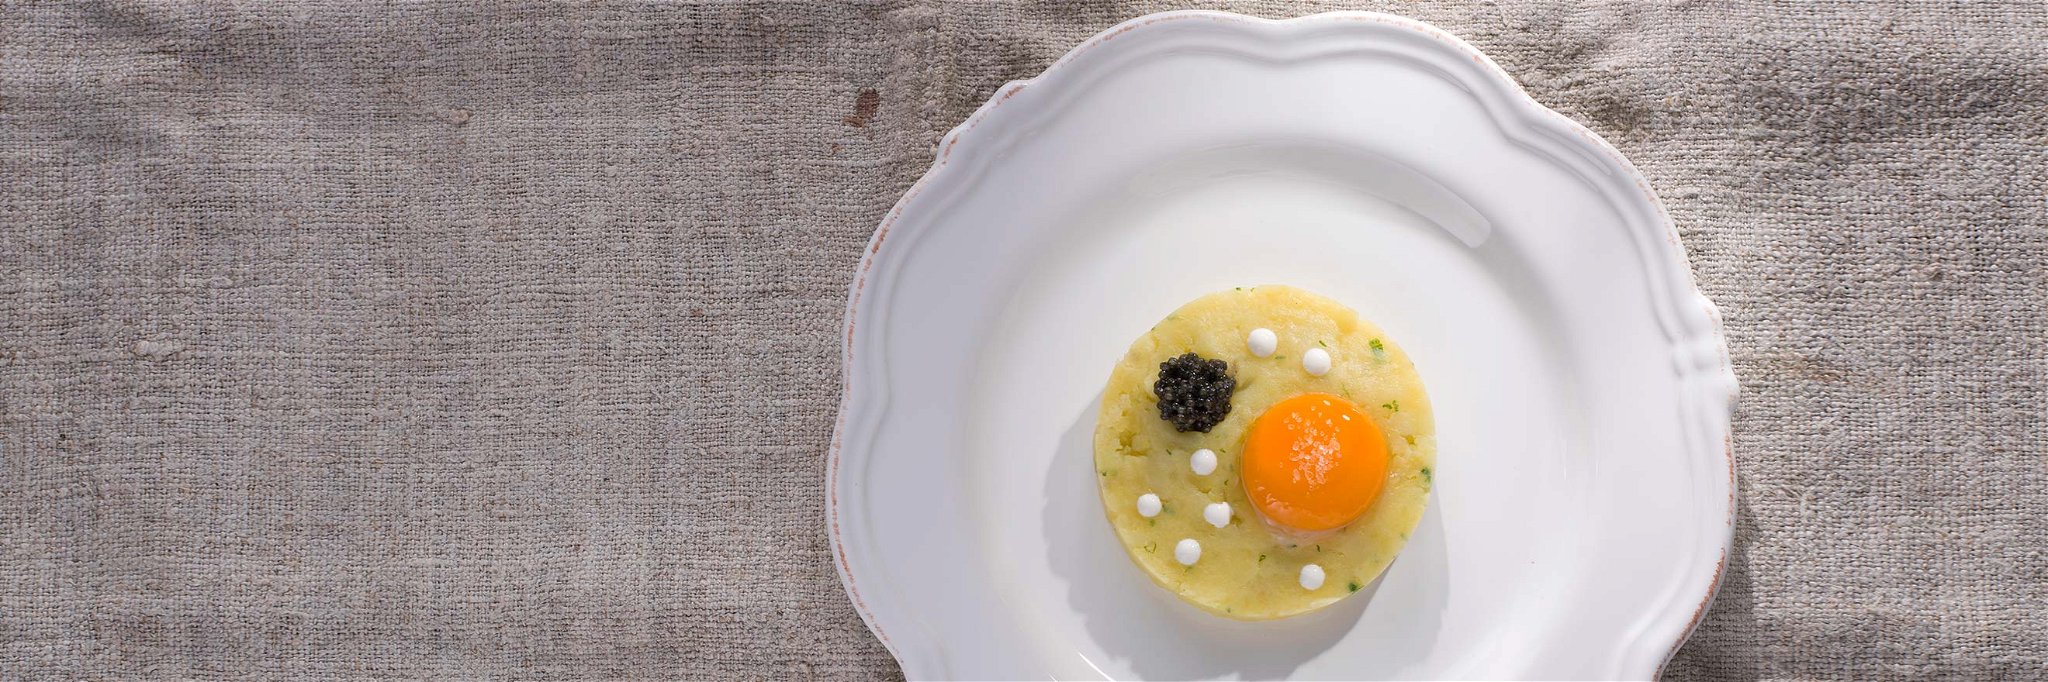 Stampfkartoffel mit Kaviar und Ei